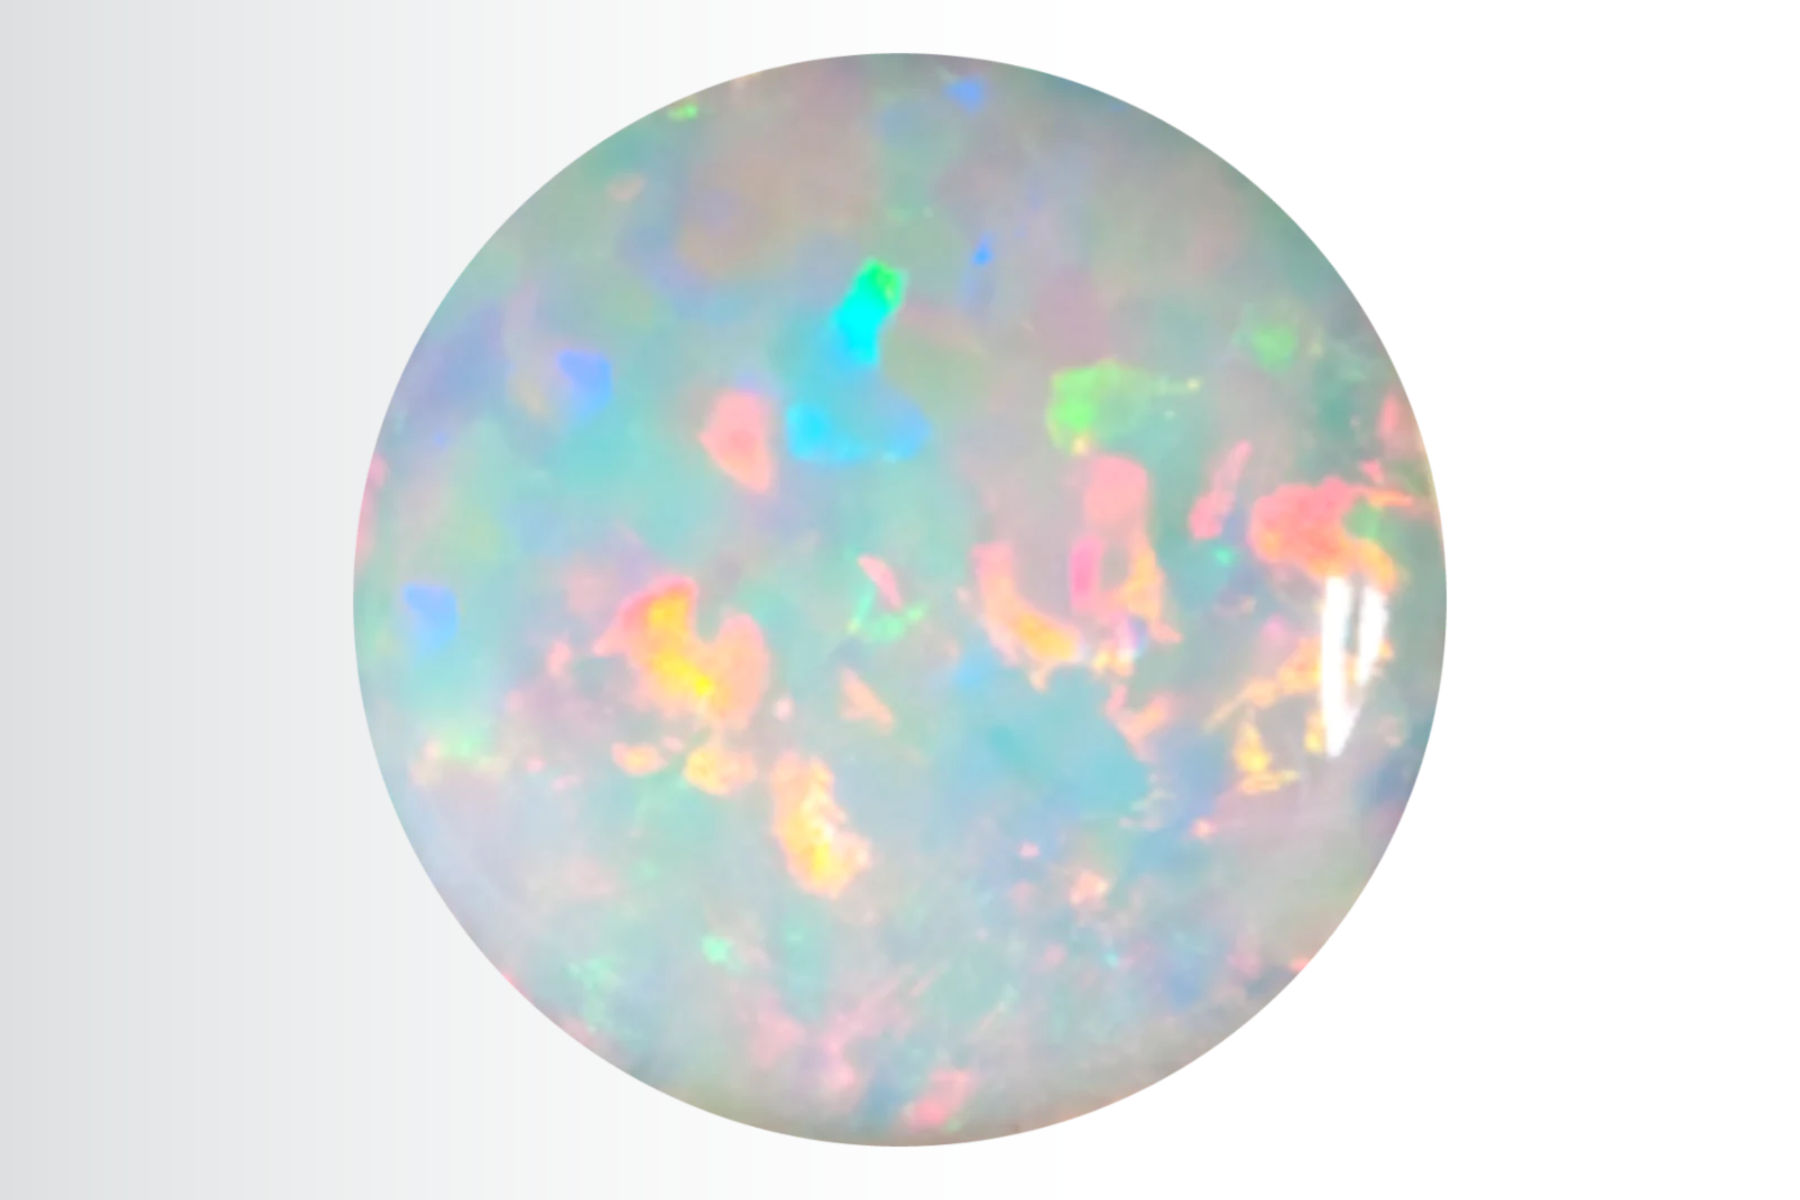 Round opal stone